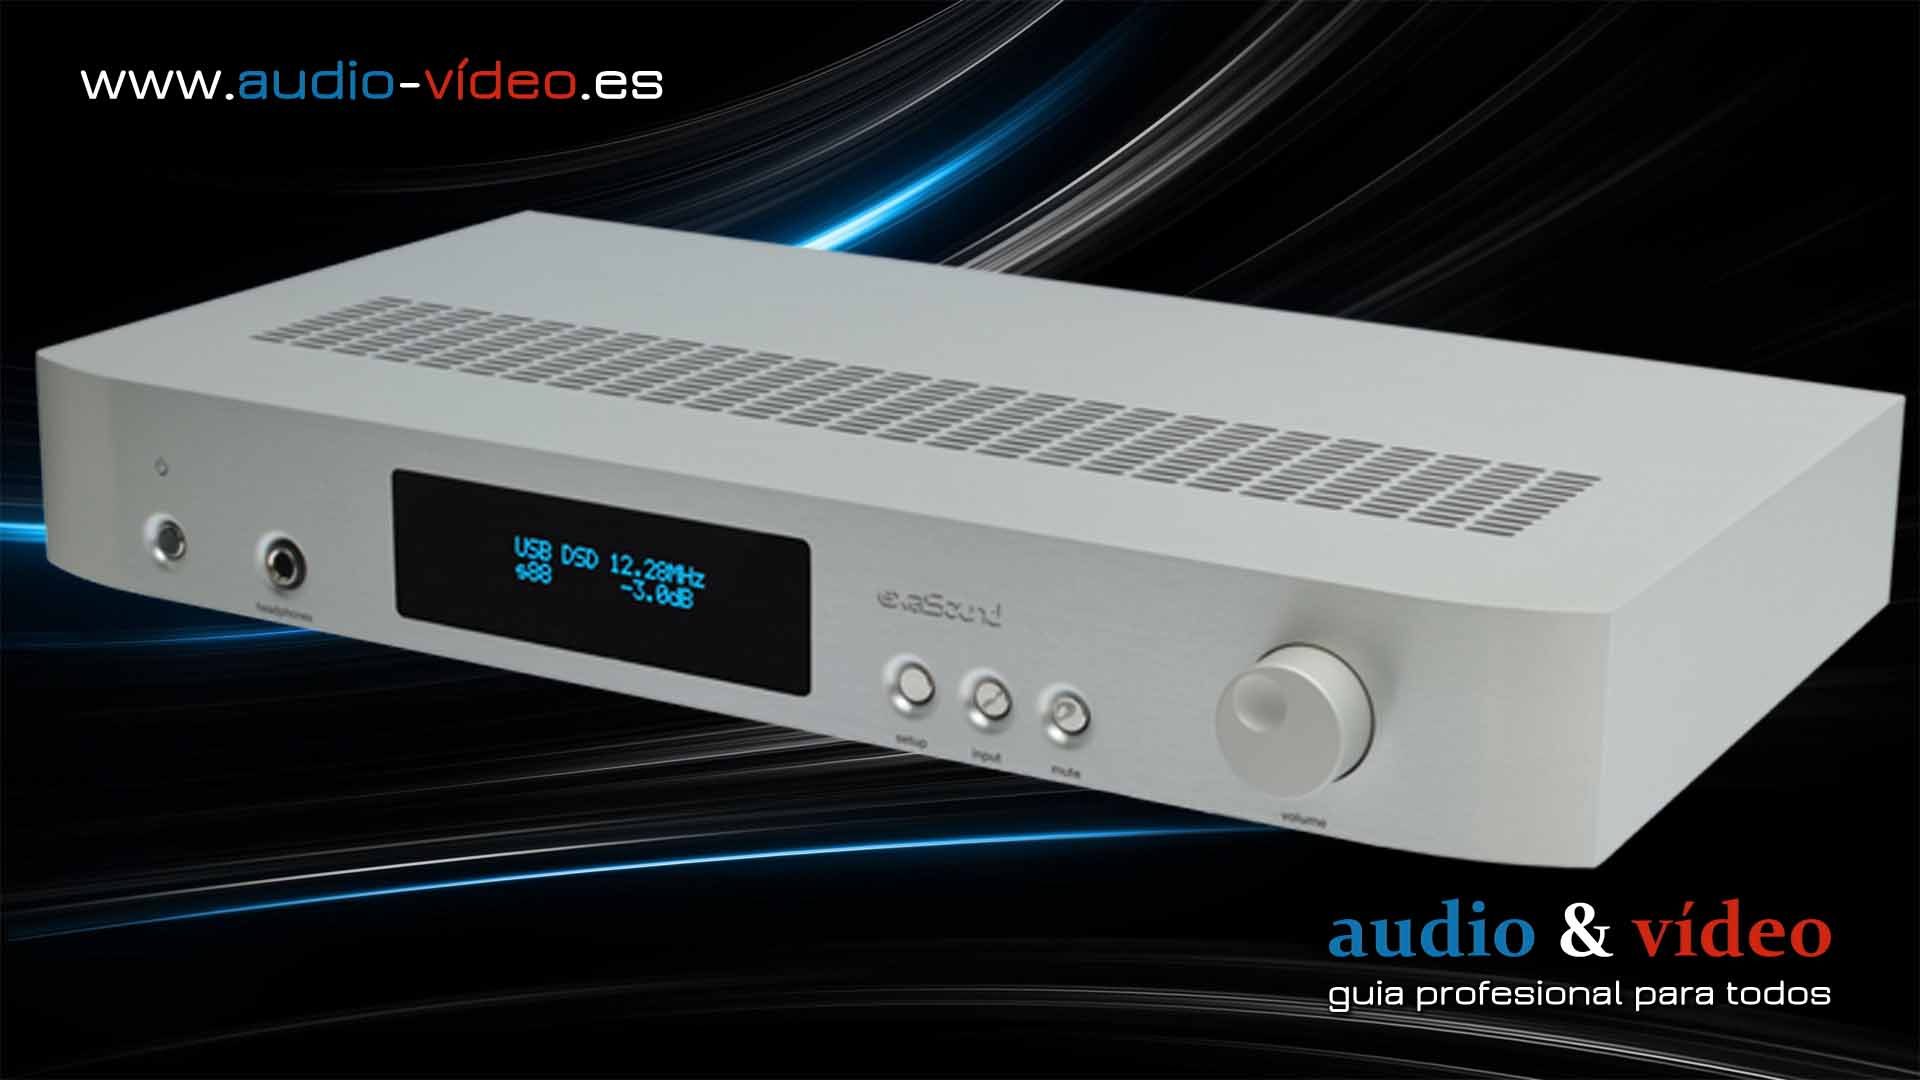 ExaSound ha anunciado un DAC / streamer de alta gama – s88 Streaming DAC